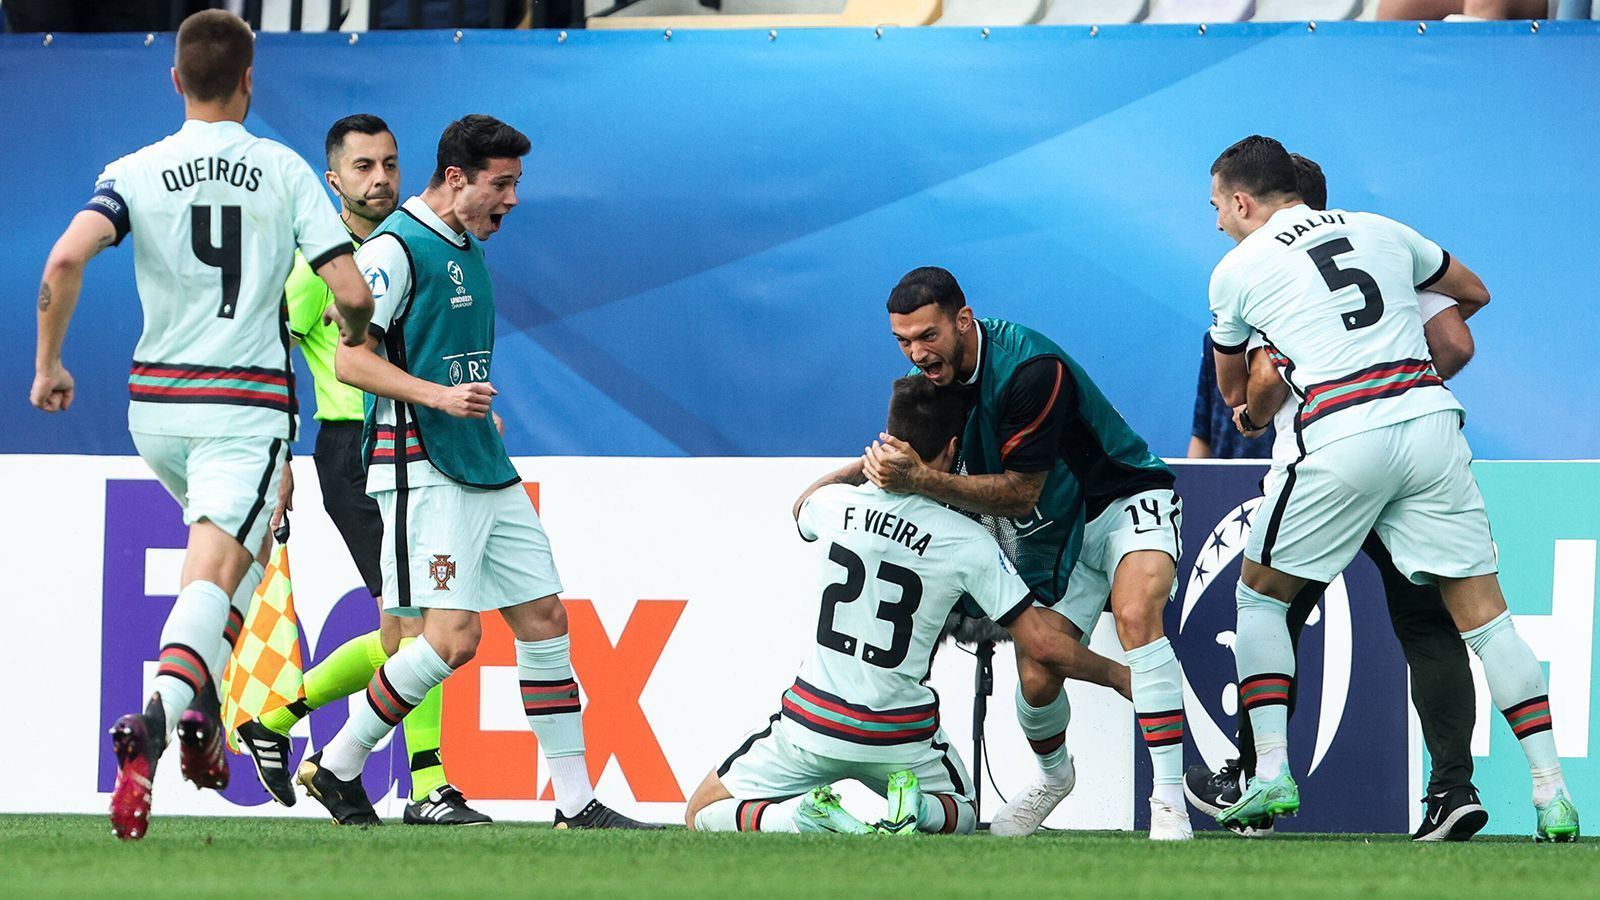 
                <strong>Bisheriger Turnierverlauf</strong><br>
                Portugal sicherte sich in der Gruppenphase den ersten Tabellenplatz. In drei Partien schossen die Portugiesen sechs Tore und kassierten keinen Gegentreffer. In der K.o.-Phase rang das Team von Trainer Rui Jorge im Viertelfinale die Italiener in der Verlängerung mit 5:3 nieder. Im Halbfinale brachte Portugal eine späte 1:0 Führung gegen Spanien über die Zeit. 
              